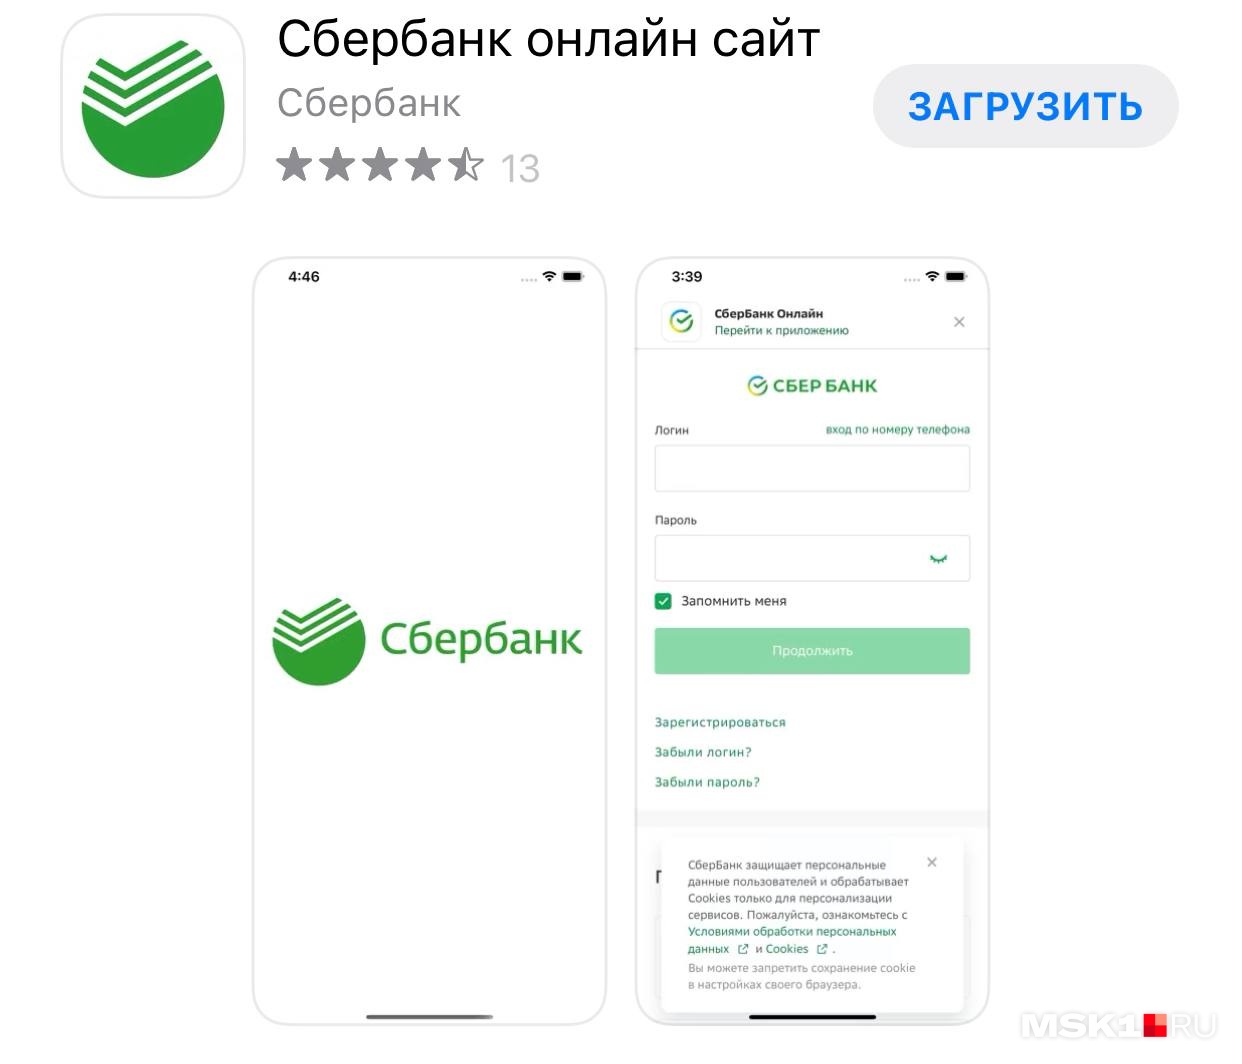 В магазине App Store появились мошеннические приложения, имитирующие работу Сбербанка